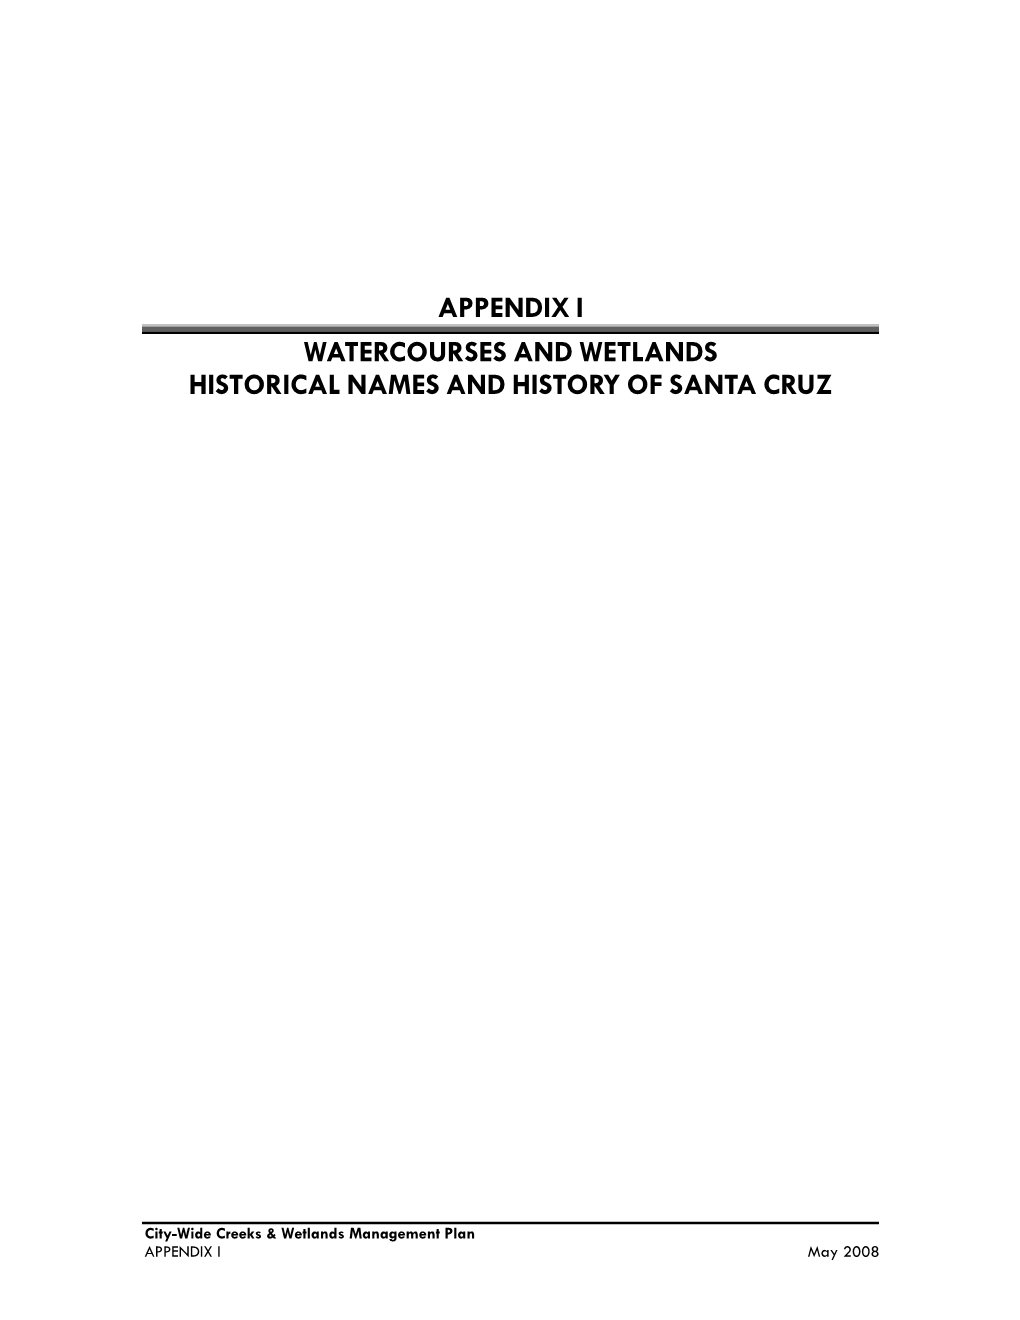 Appendix I Watercourses and Wetlands Historical Names and History of Santa Cruz